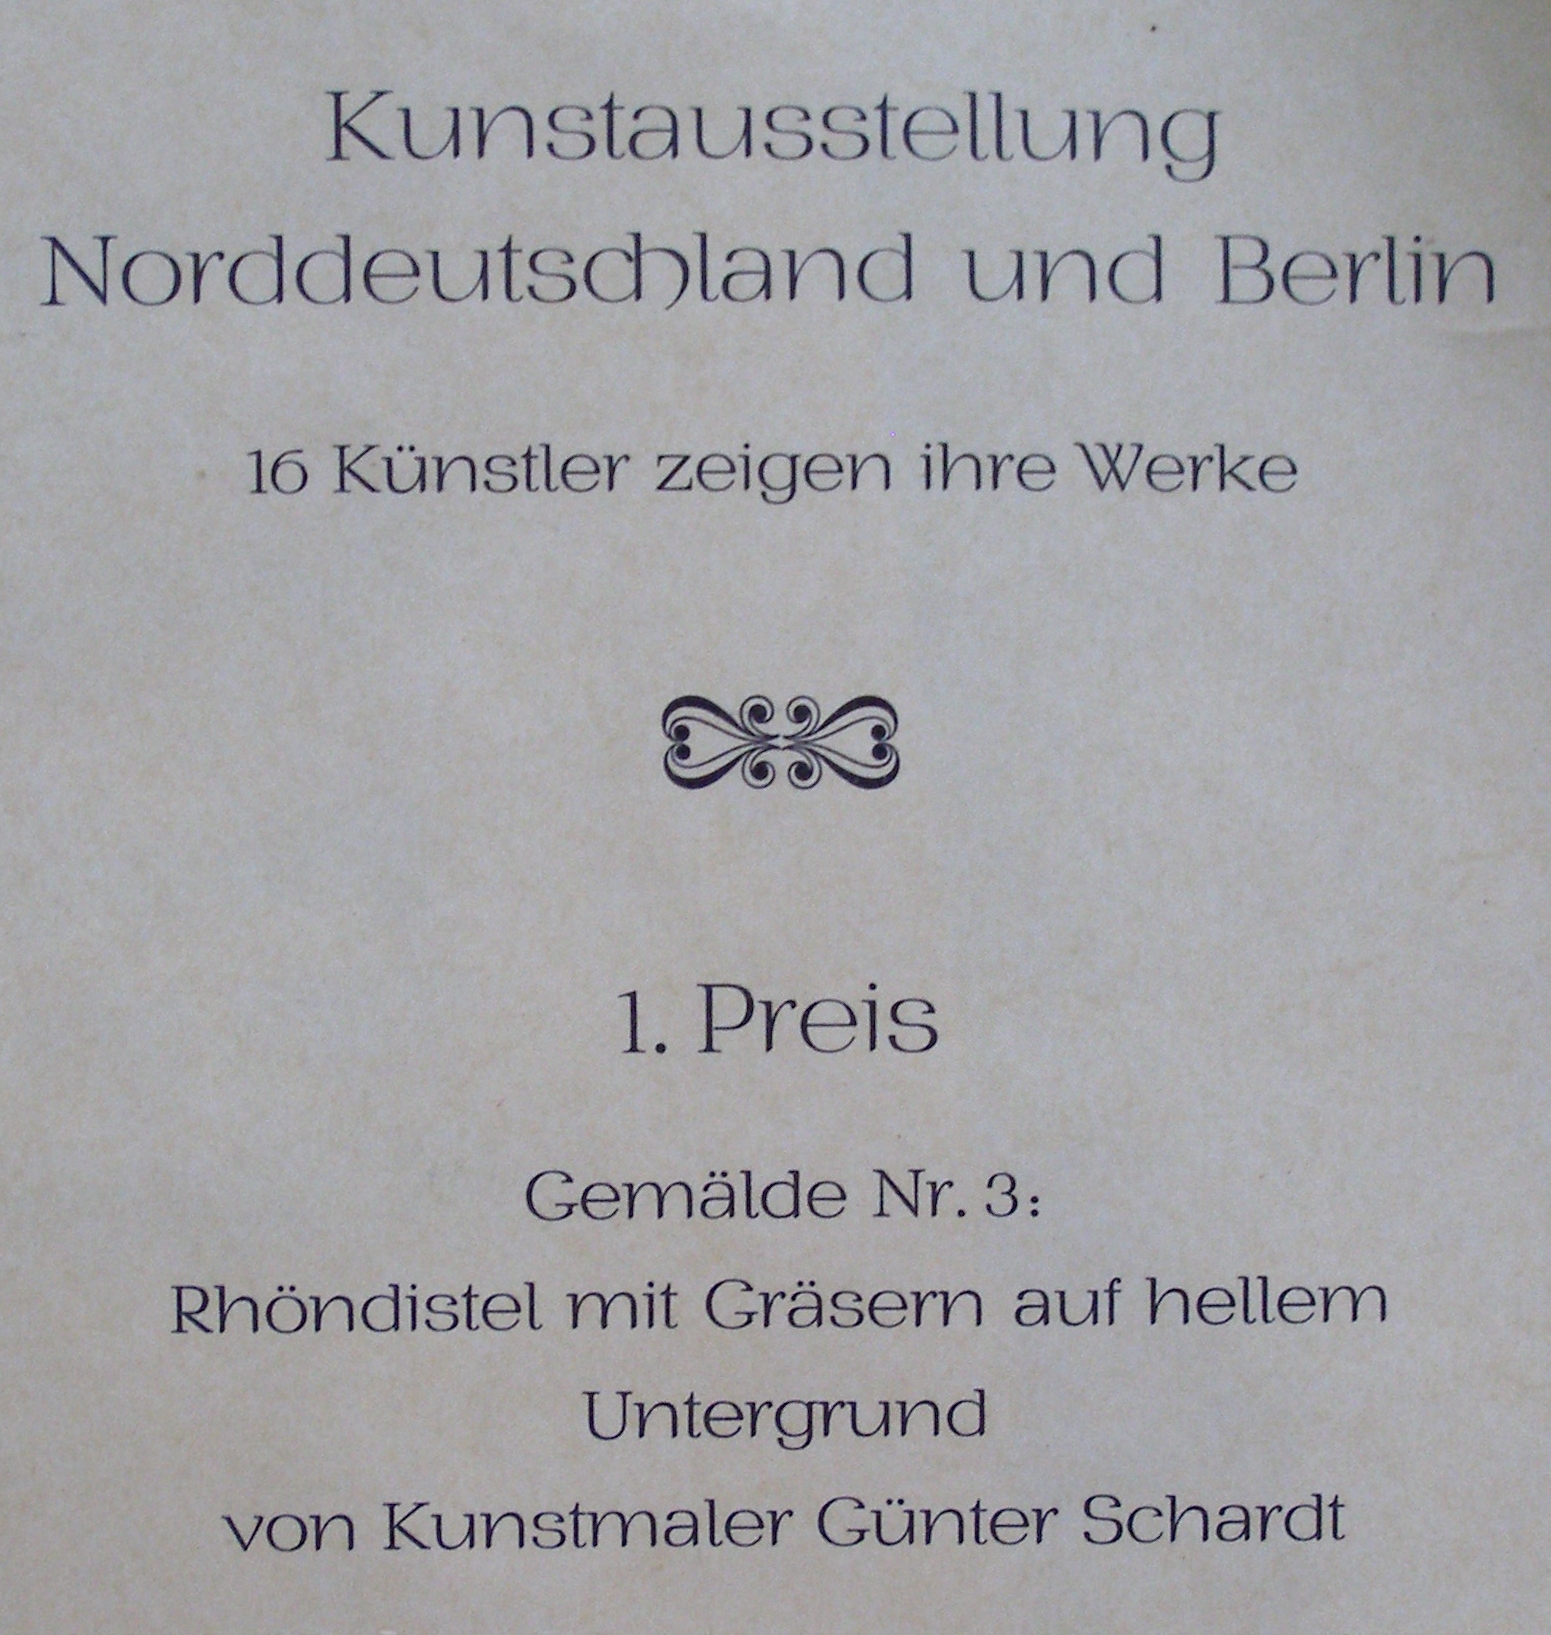 1. Preis bei der Kunstausstellung 1976